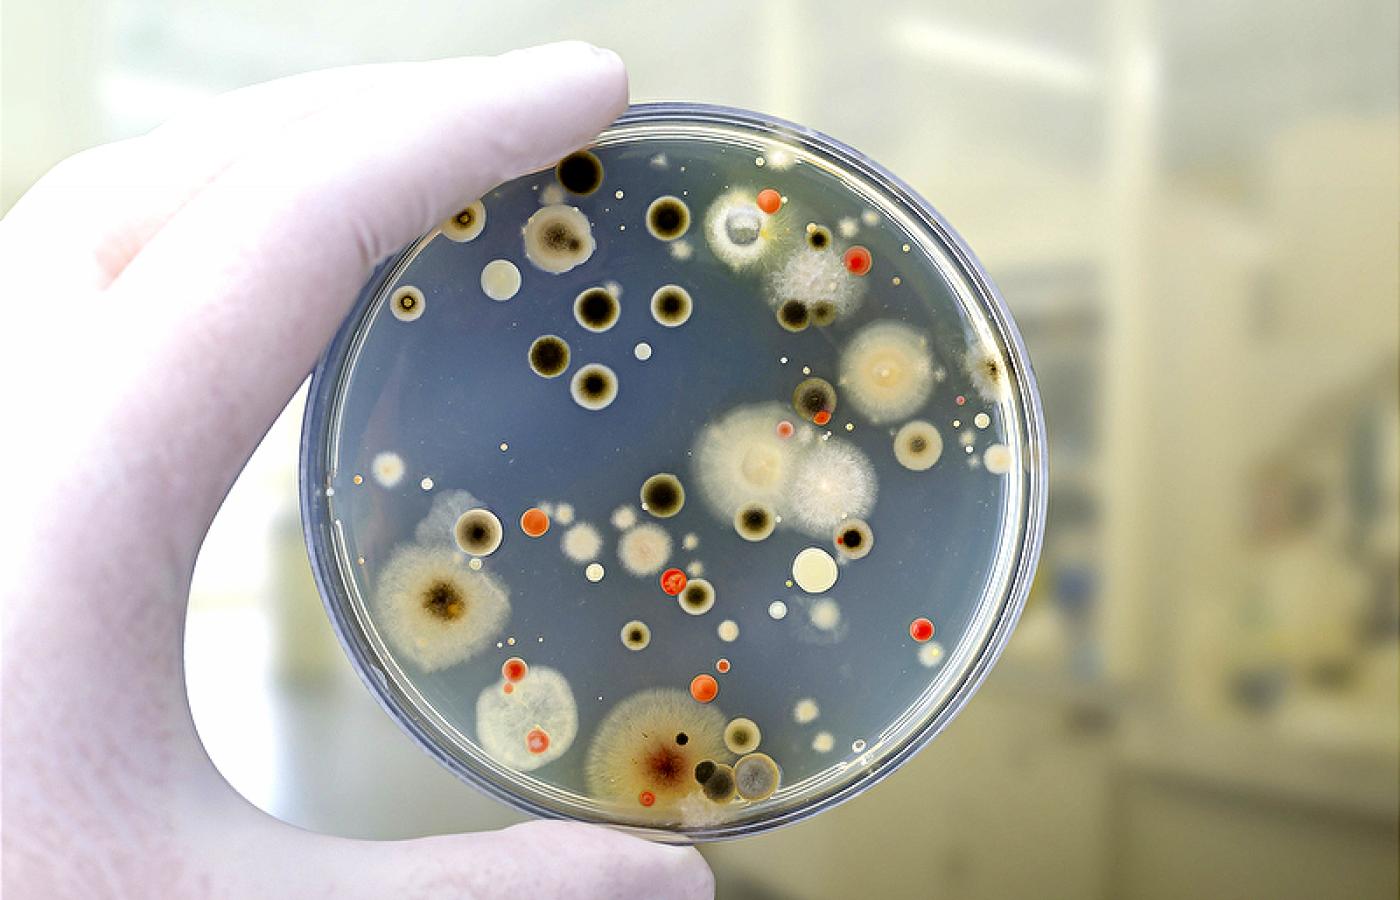 Płytka Petriego z koloniami bakterii i grzybów